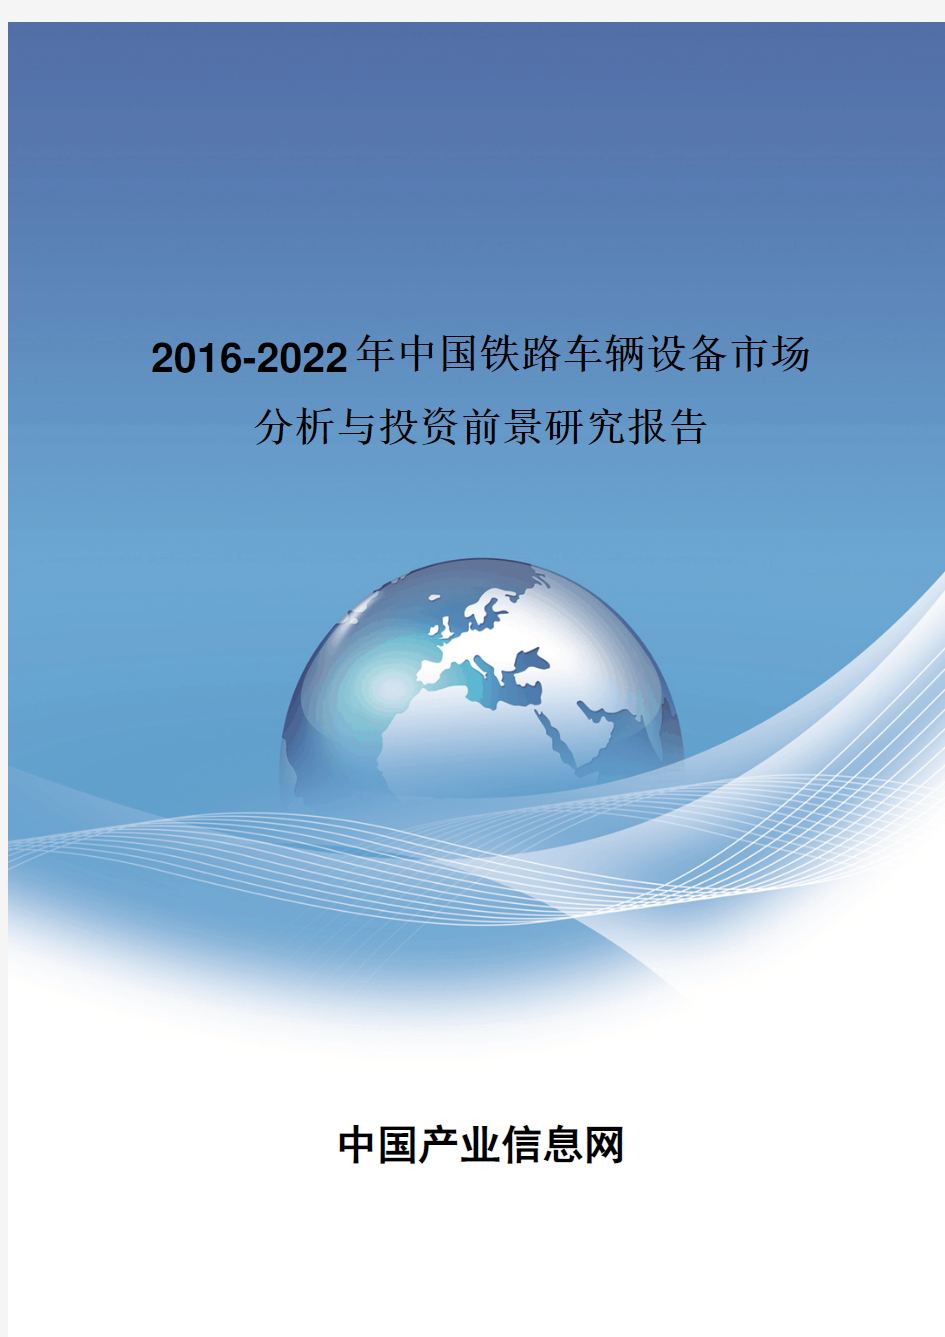 2016-2022年中国铁路车辆设备市场分析报告